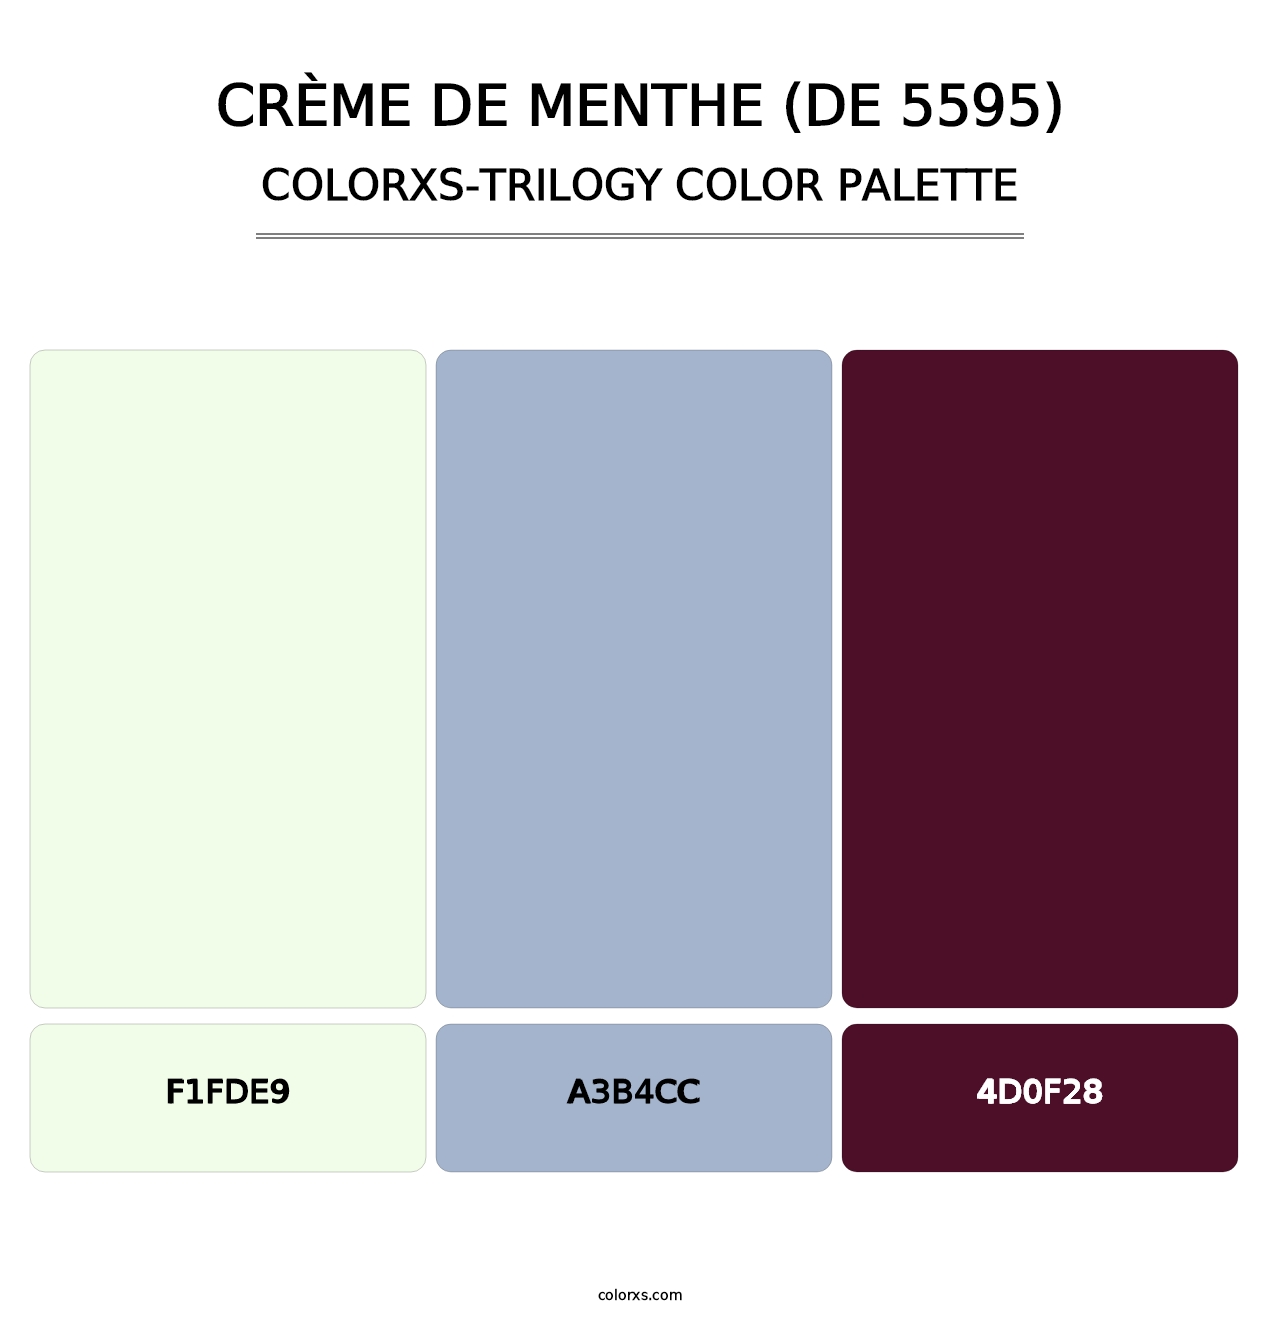 Crème de Menthe (DE 5595) - Colorxs Trilogy Palette